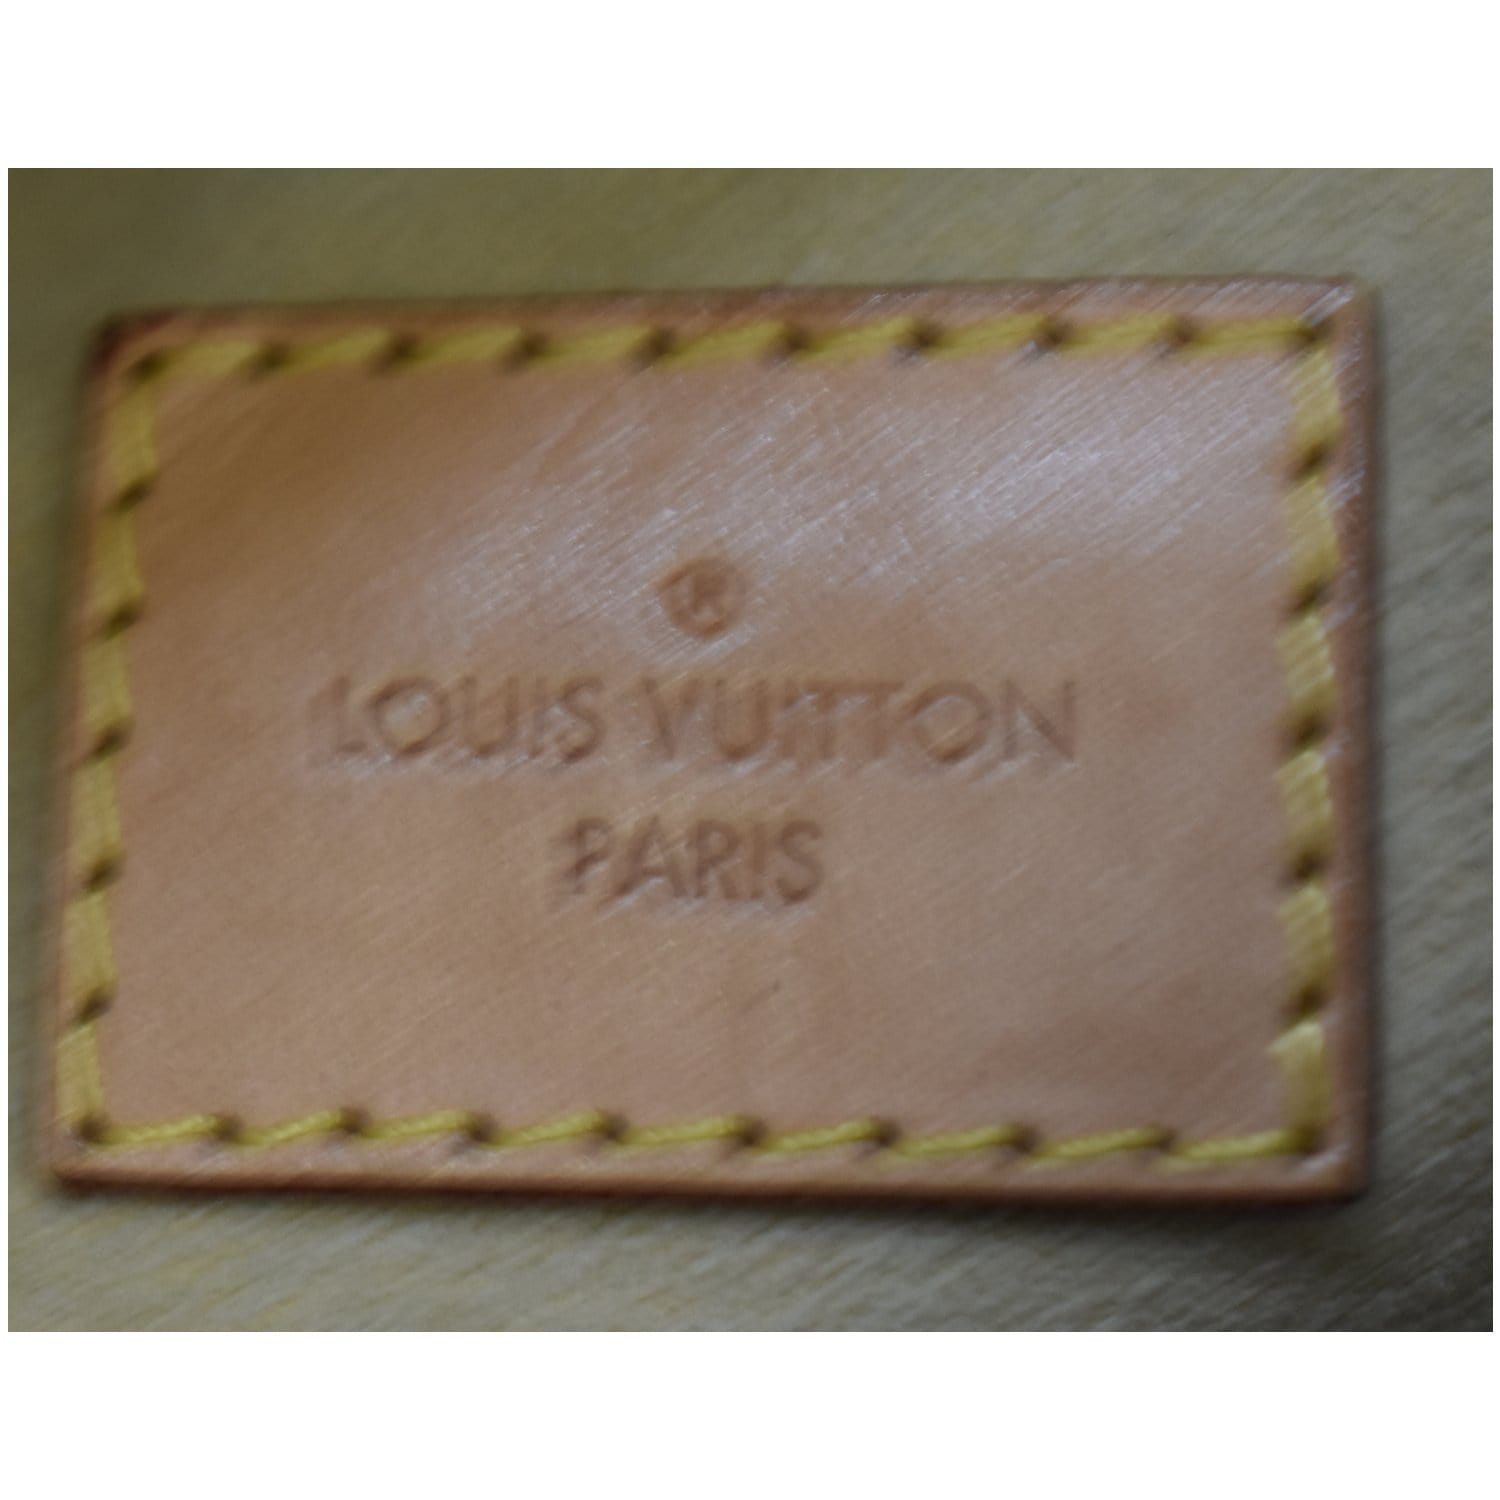 Sold at Auction: Louis Vuitton, LOUIS VUITTON, LARGE ARTSY DAMIER